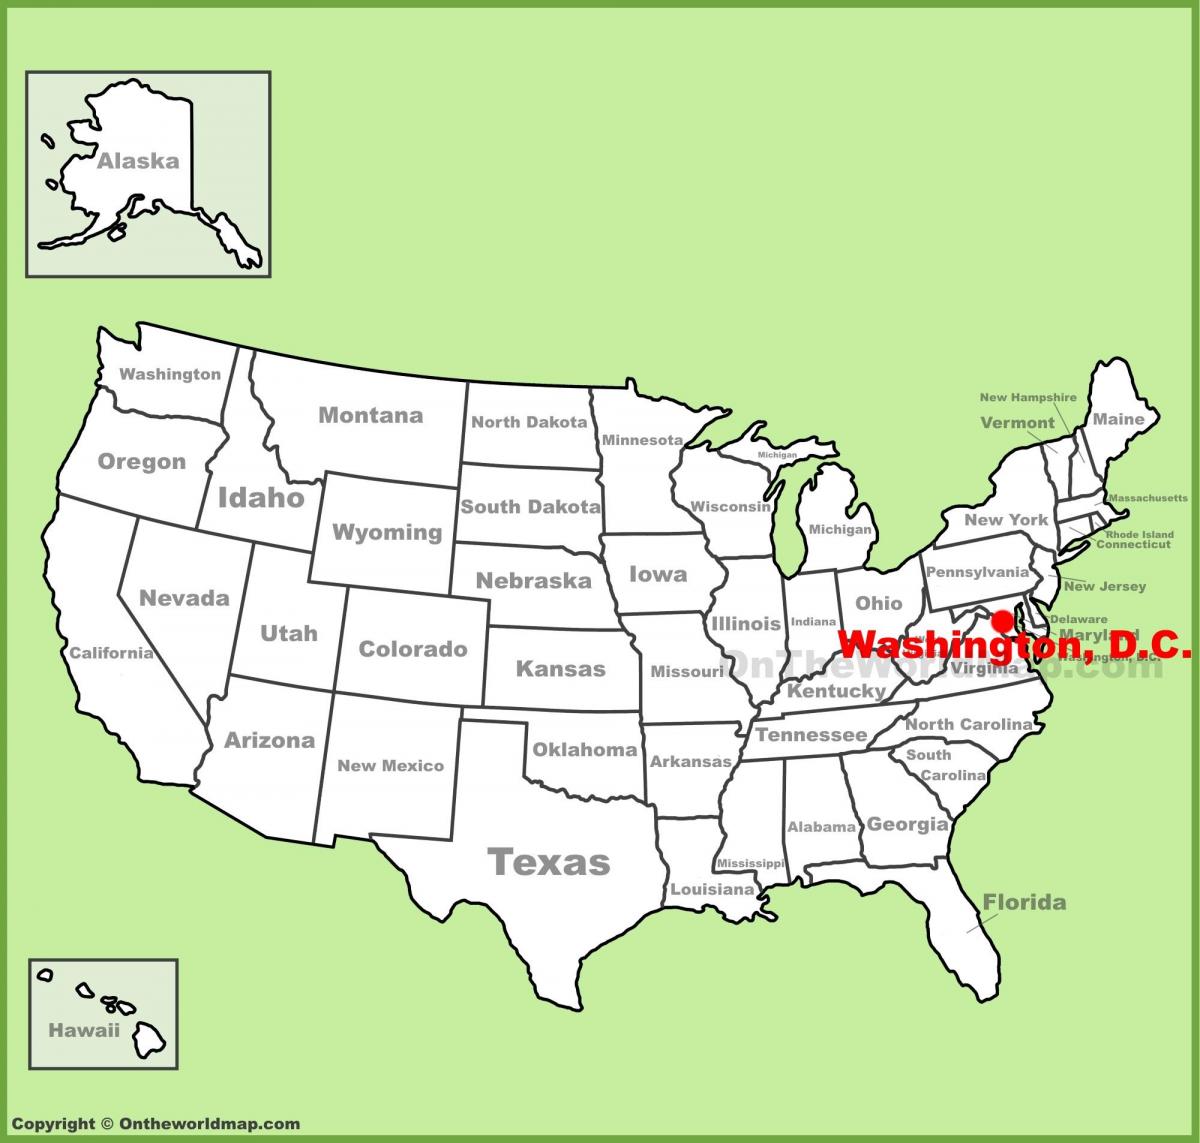 Вашингтон, округ Колумбия на карте США